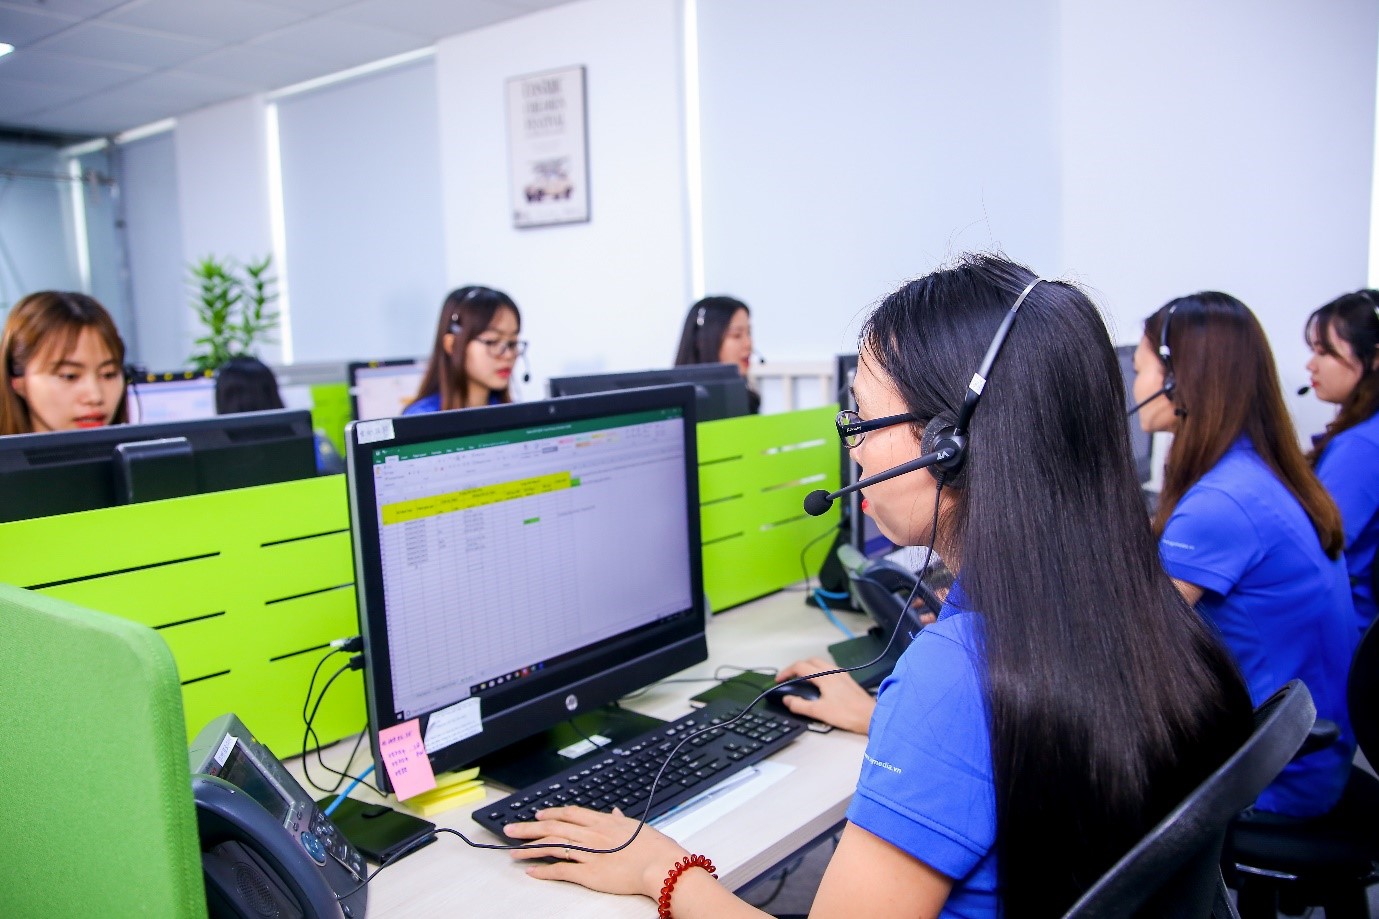 WeatherPlus hướng đến mục tiêu phát triển thêm nhiều công nghệ, mở rộng hợp tác để trở thành đơn vị cung cấp thông tin dự báo thời tiết, khí hậu tin cậy nhất Việt Nam. Nguồn: WP